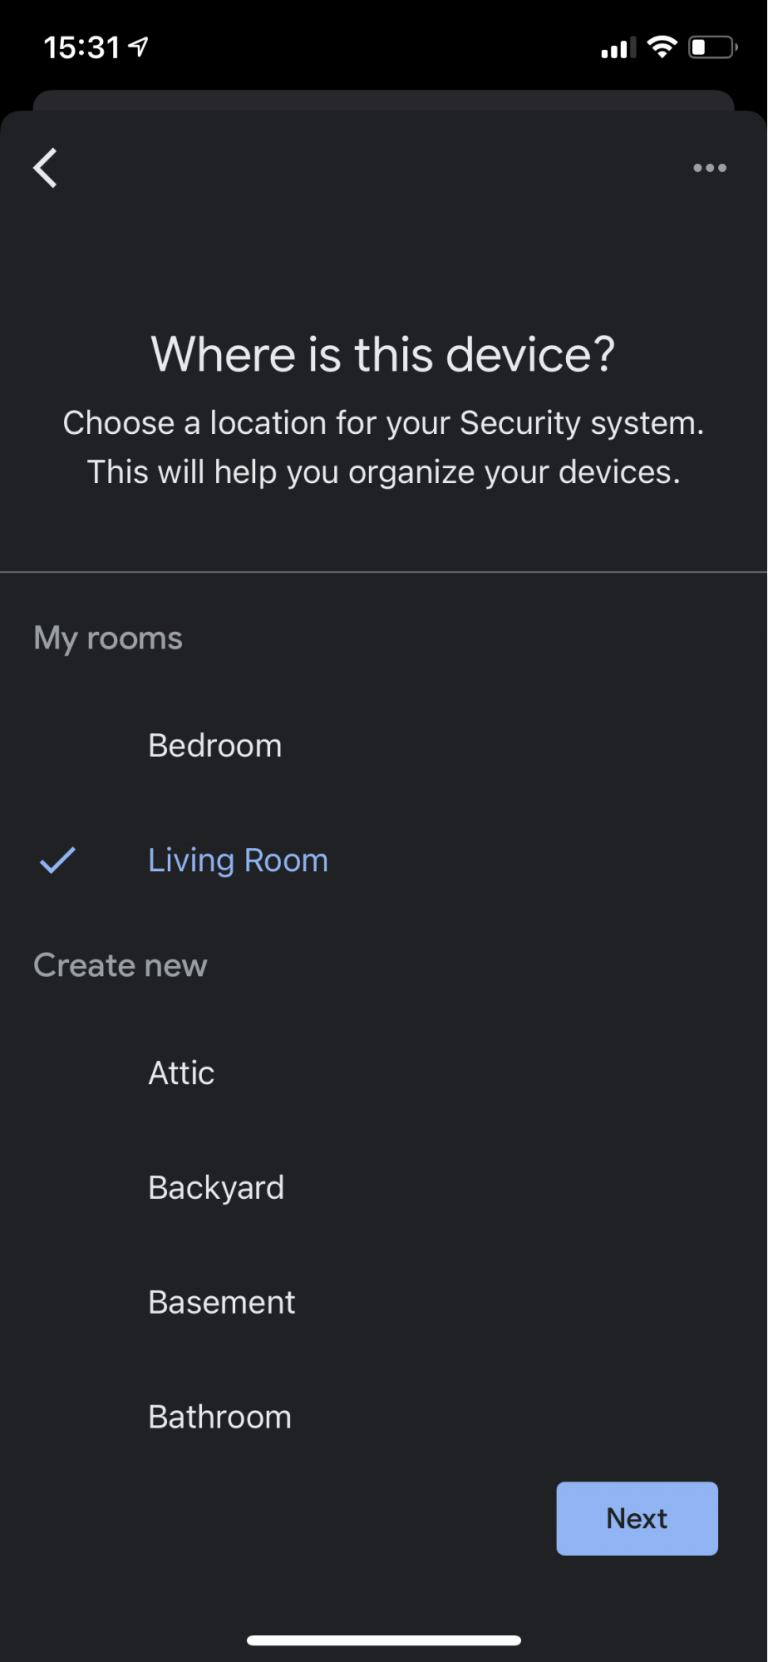 Zrzut ekranu aplikacji Google Home z prośbą o wybranie, w którym pokoju znajduje się nowe urządzenie